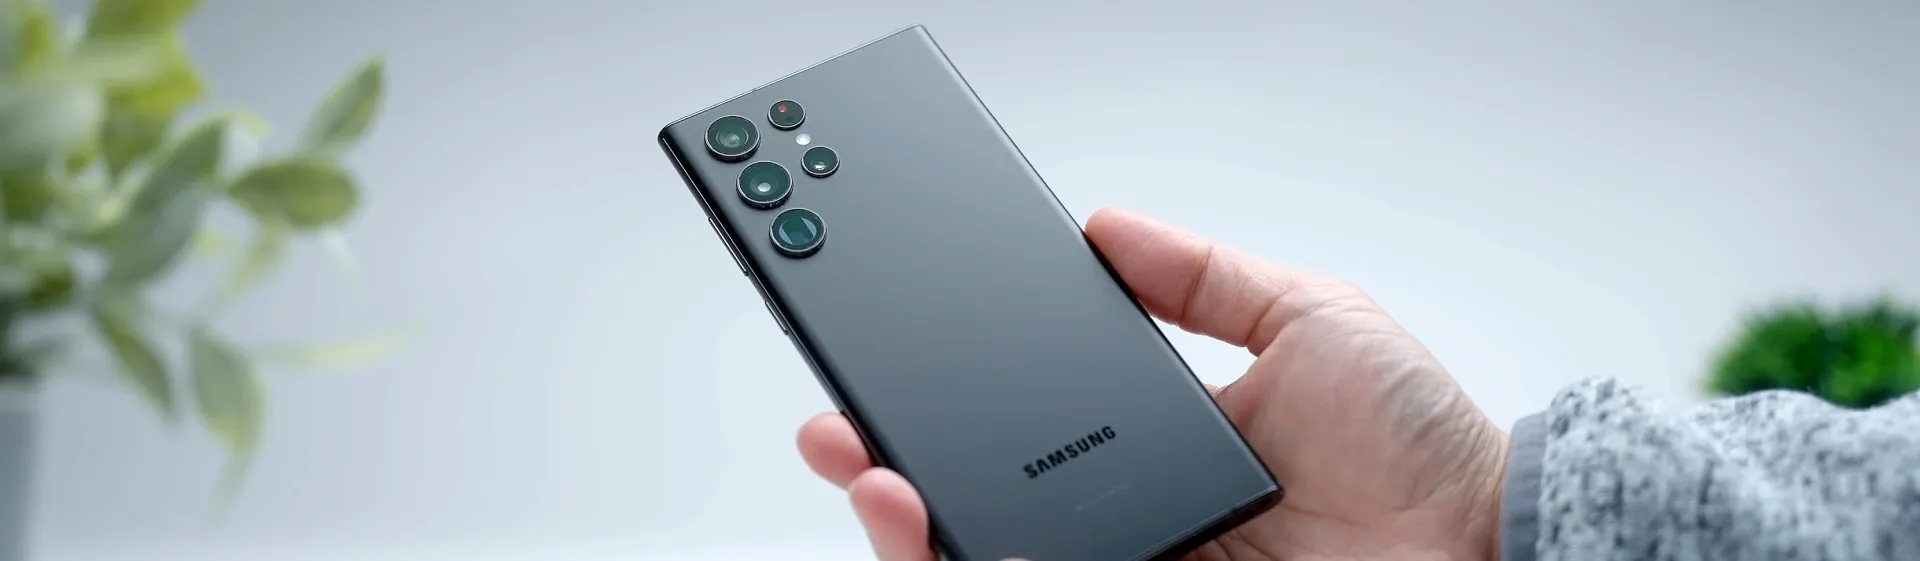 Celular Samsung Galaxy A54 5G A546E 8GB de RAM / 256GB / Tela 6.4